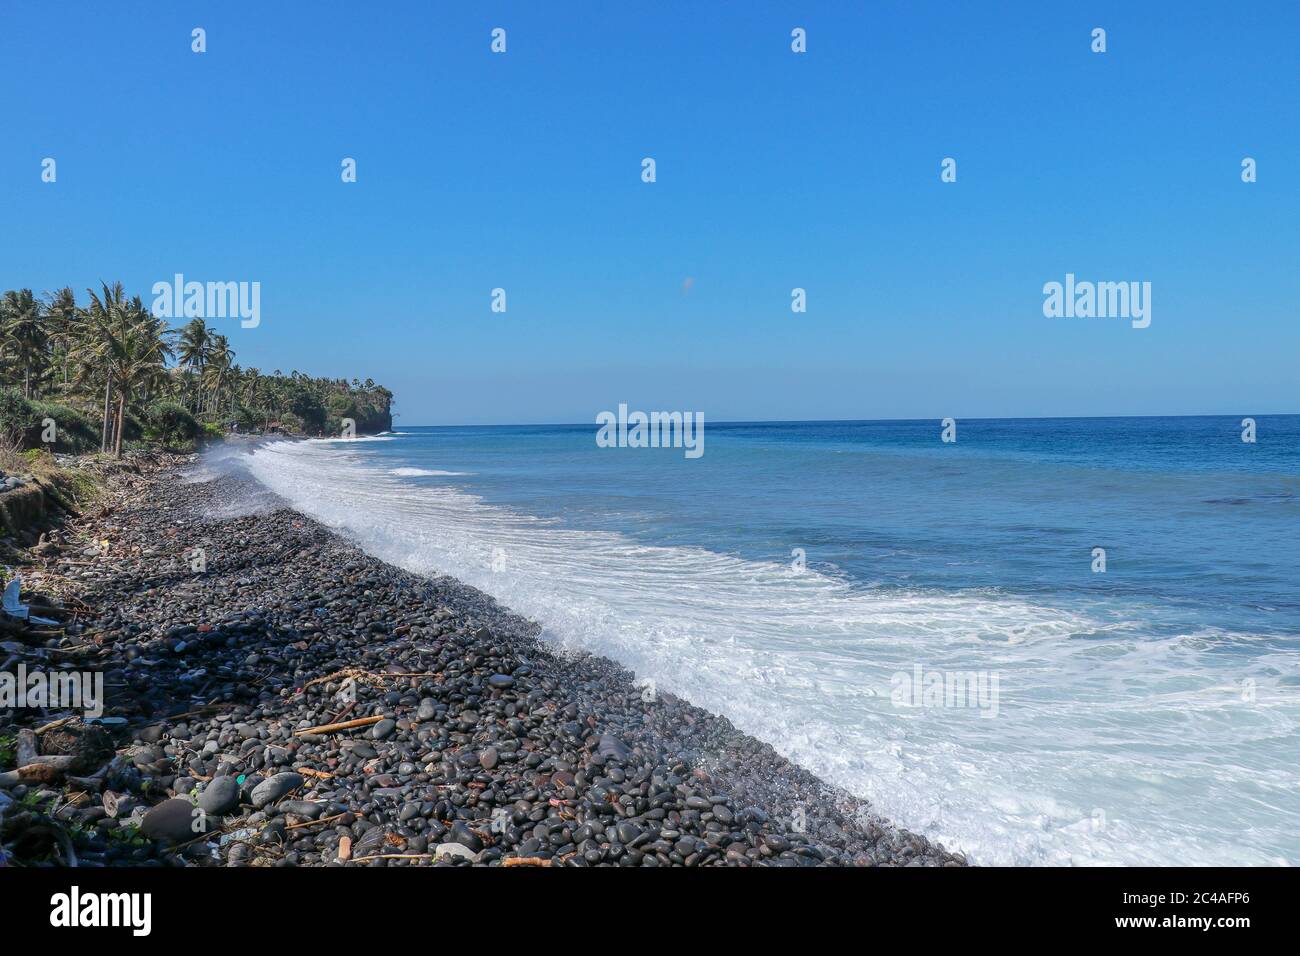 Plage tropicale avec galets noirs. L'île de Bali avec une côte rocheuse.  Plage de sable noir Indonésie Photo Stock - Alamy